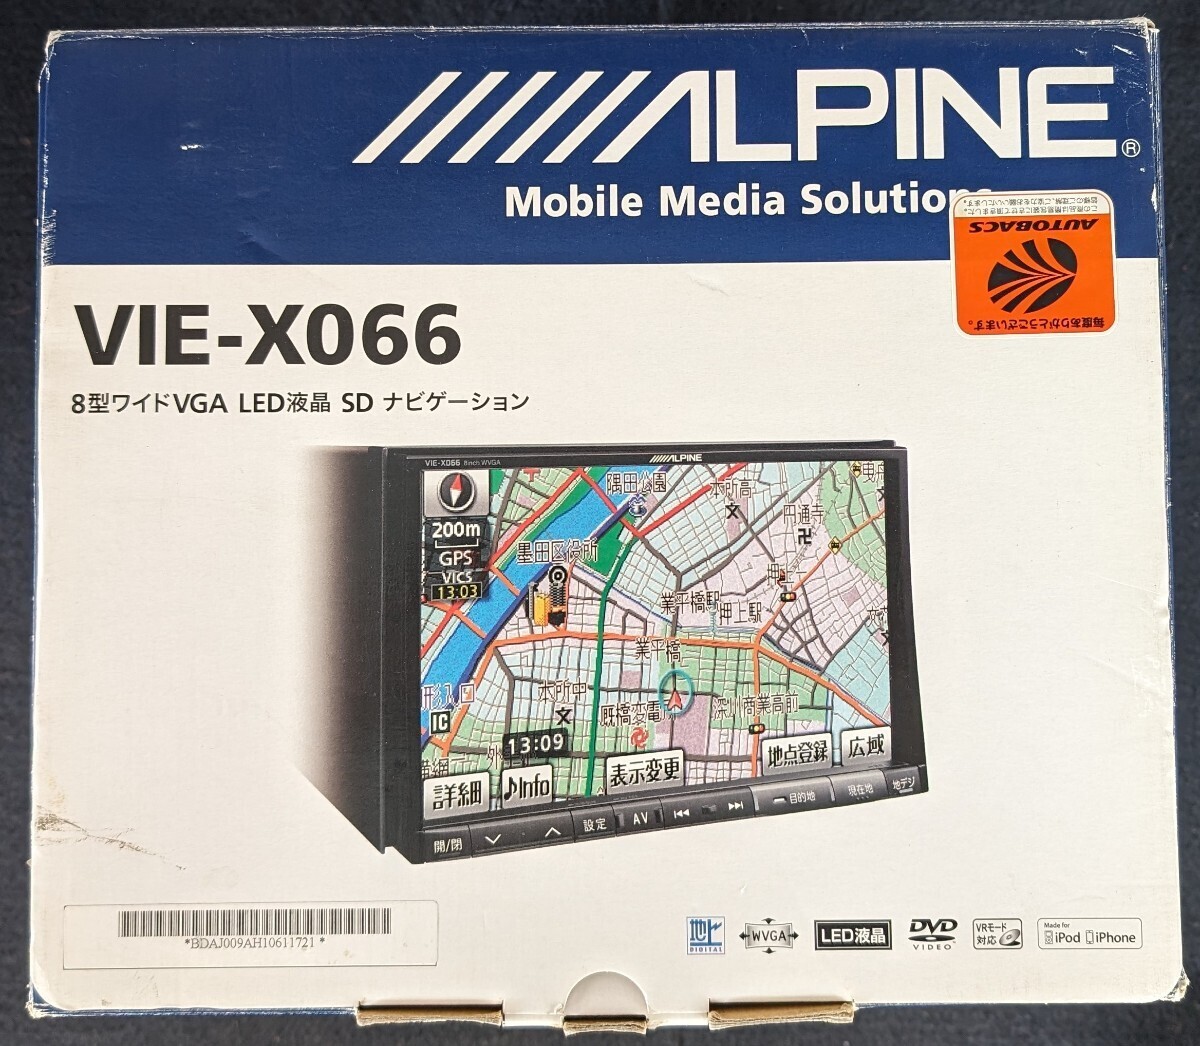 アルパイン BIG-X 8インチ 大画面 SDナビ 新品アンテナ付 VIE-X066 CD DVD 地デジ フルセグ 4×4 LED液晶 ALPINE_画像1